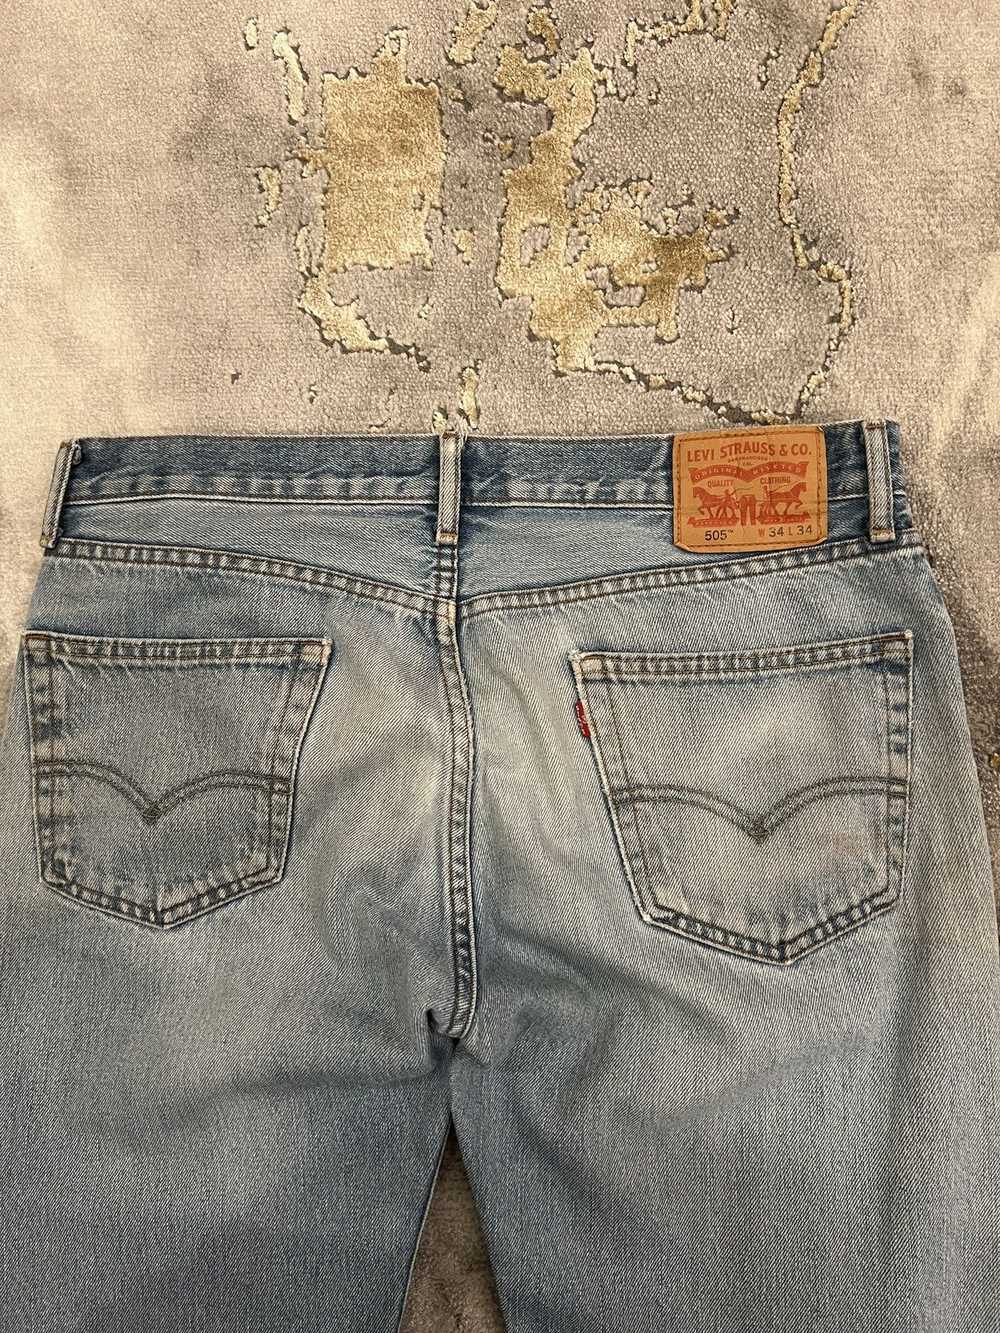 Levi's × Vintage Vintage Levi’s Jeans 505 34 x 34 - image 5